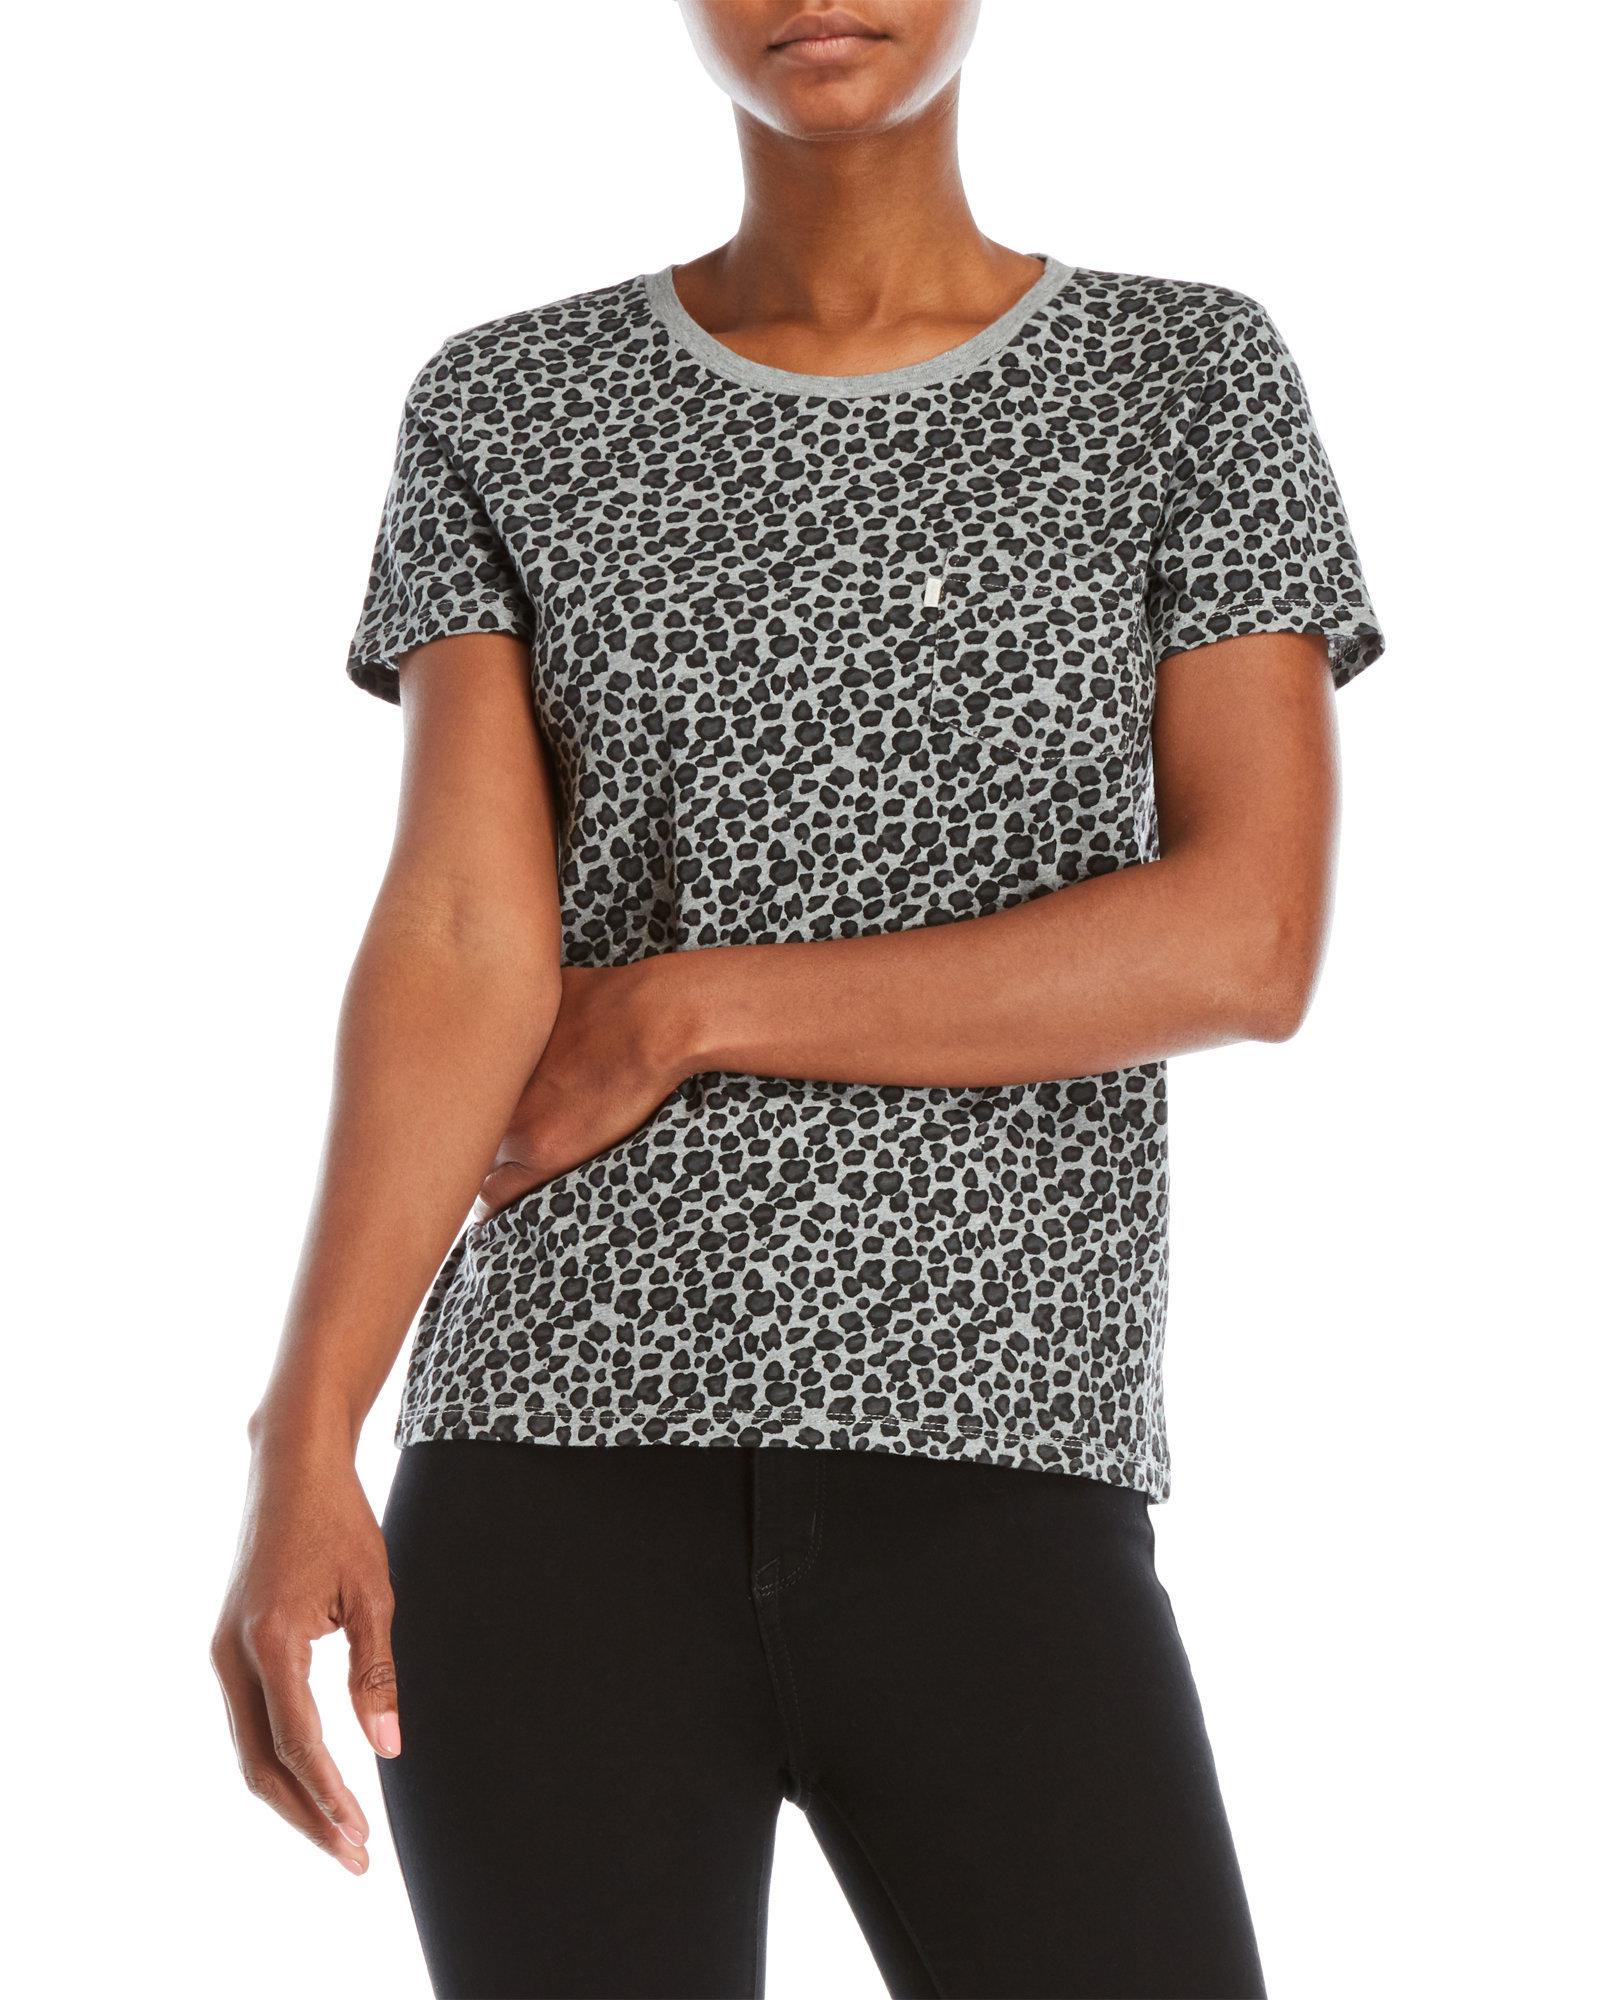 levi's leopard shirt